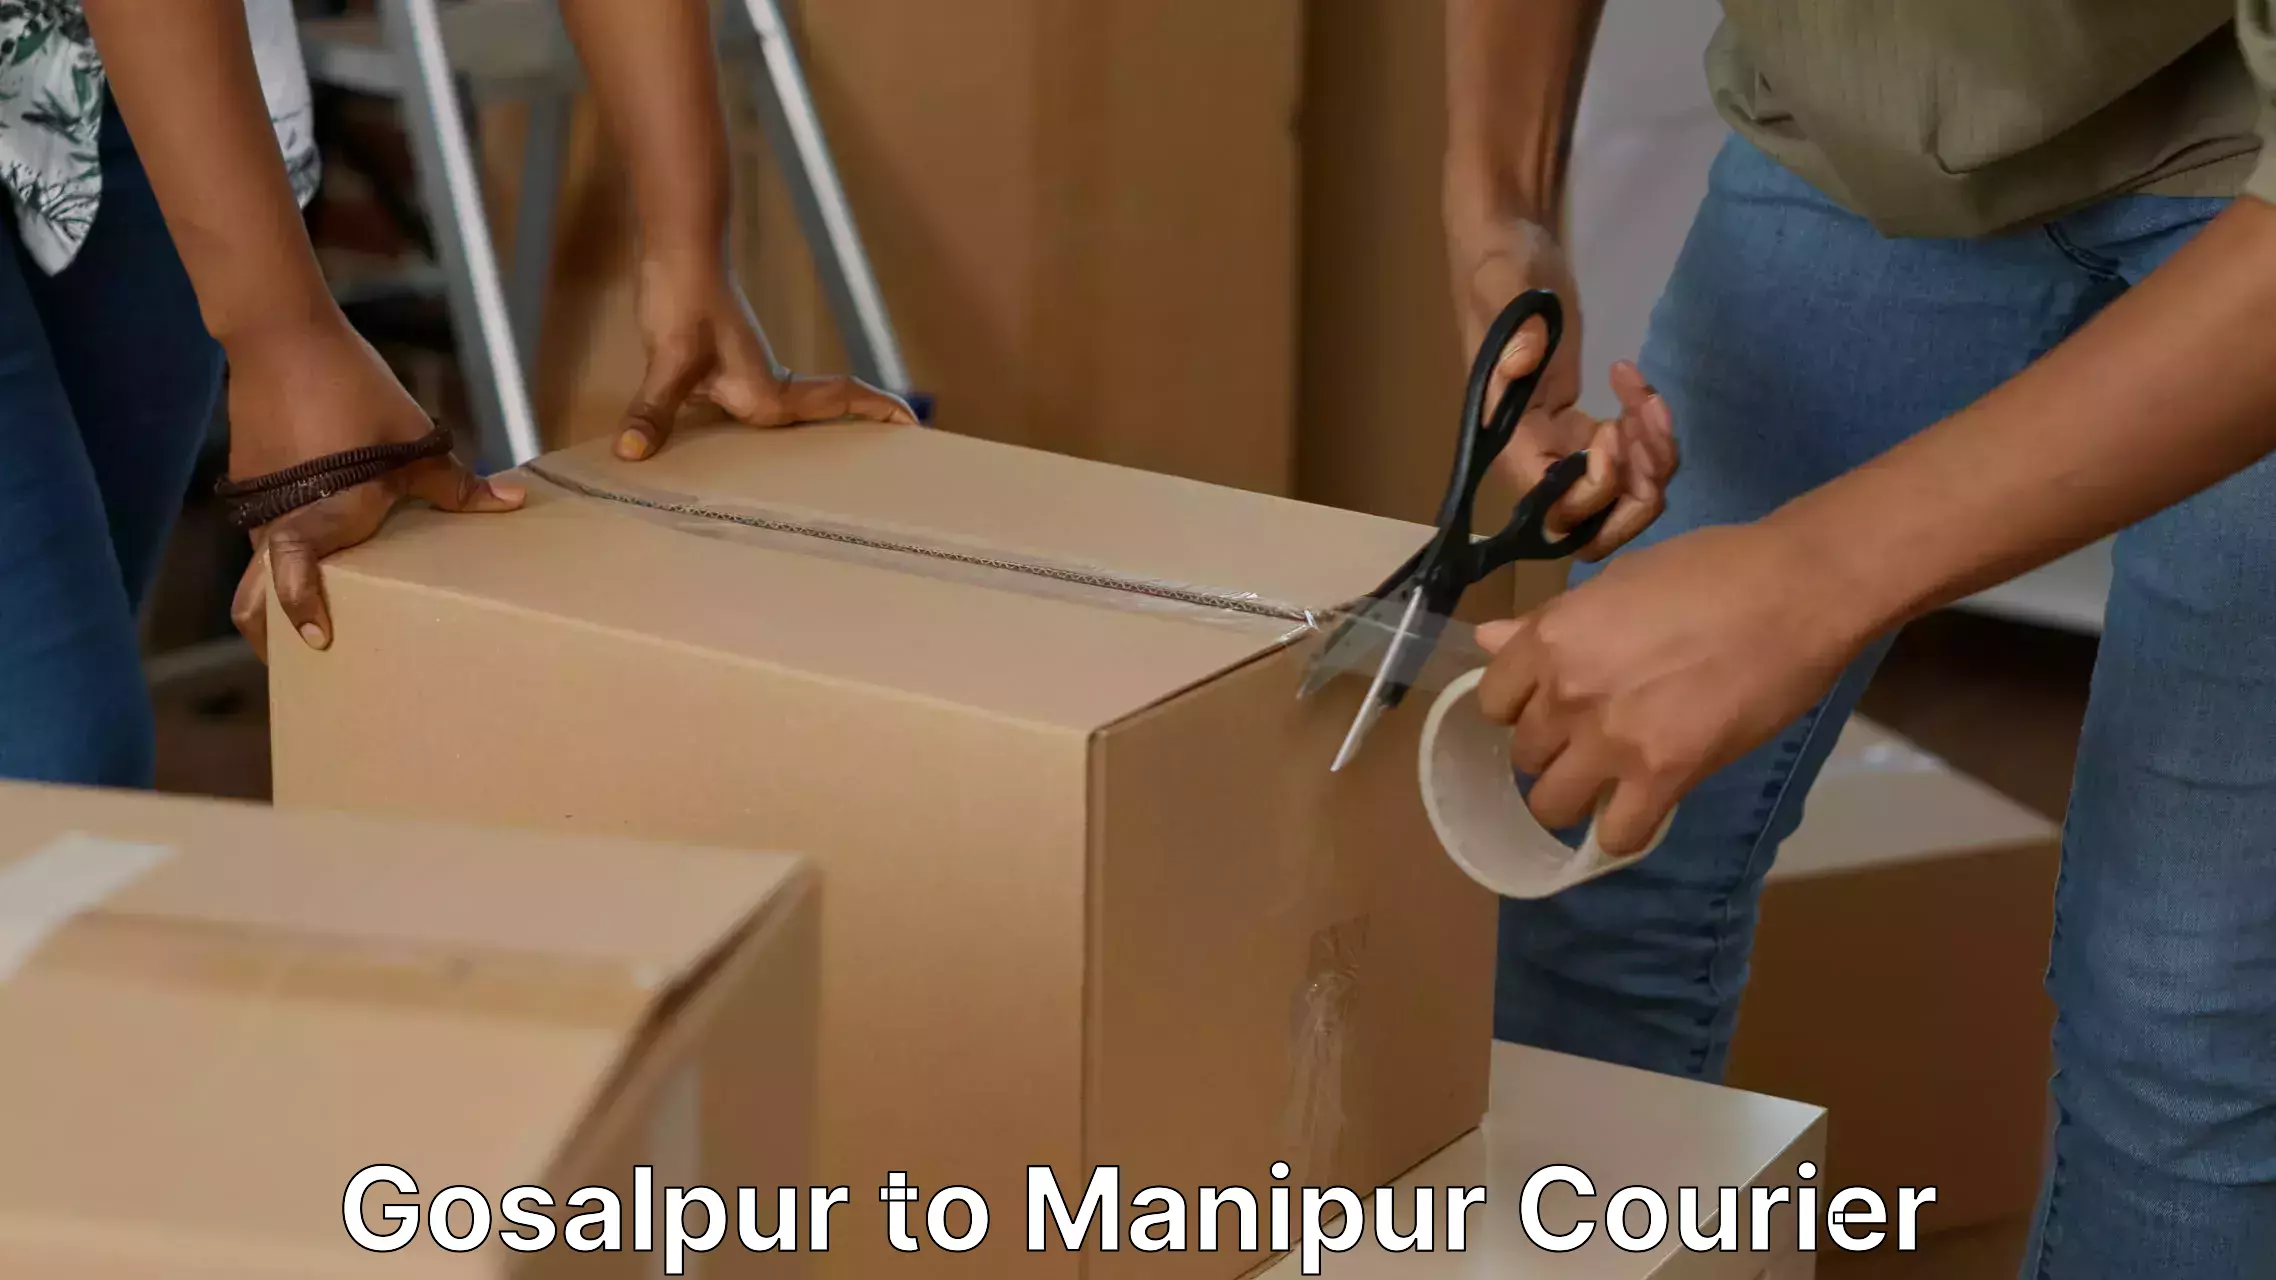 High-quality moving services Gosalpur to Churachandpur